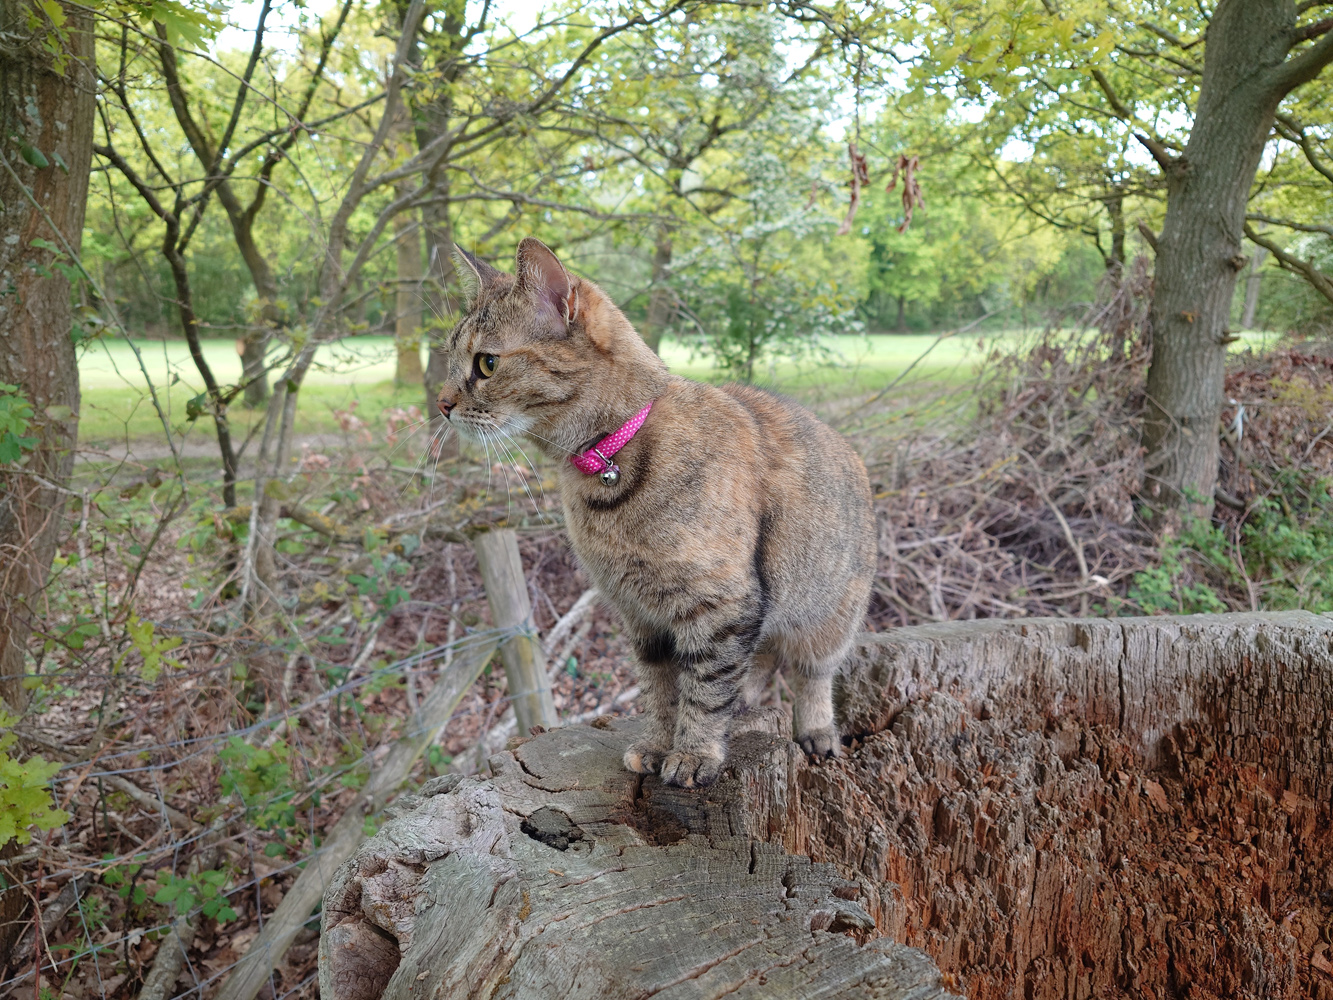 Sony Xperia 1 V camera samples cat on treet stump